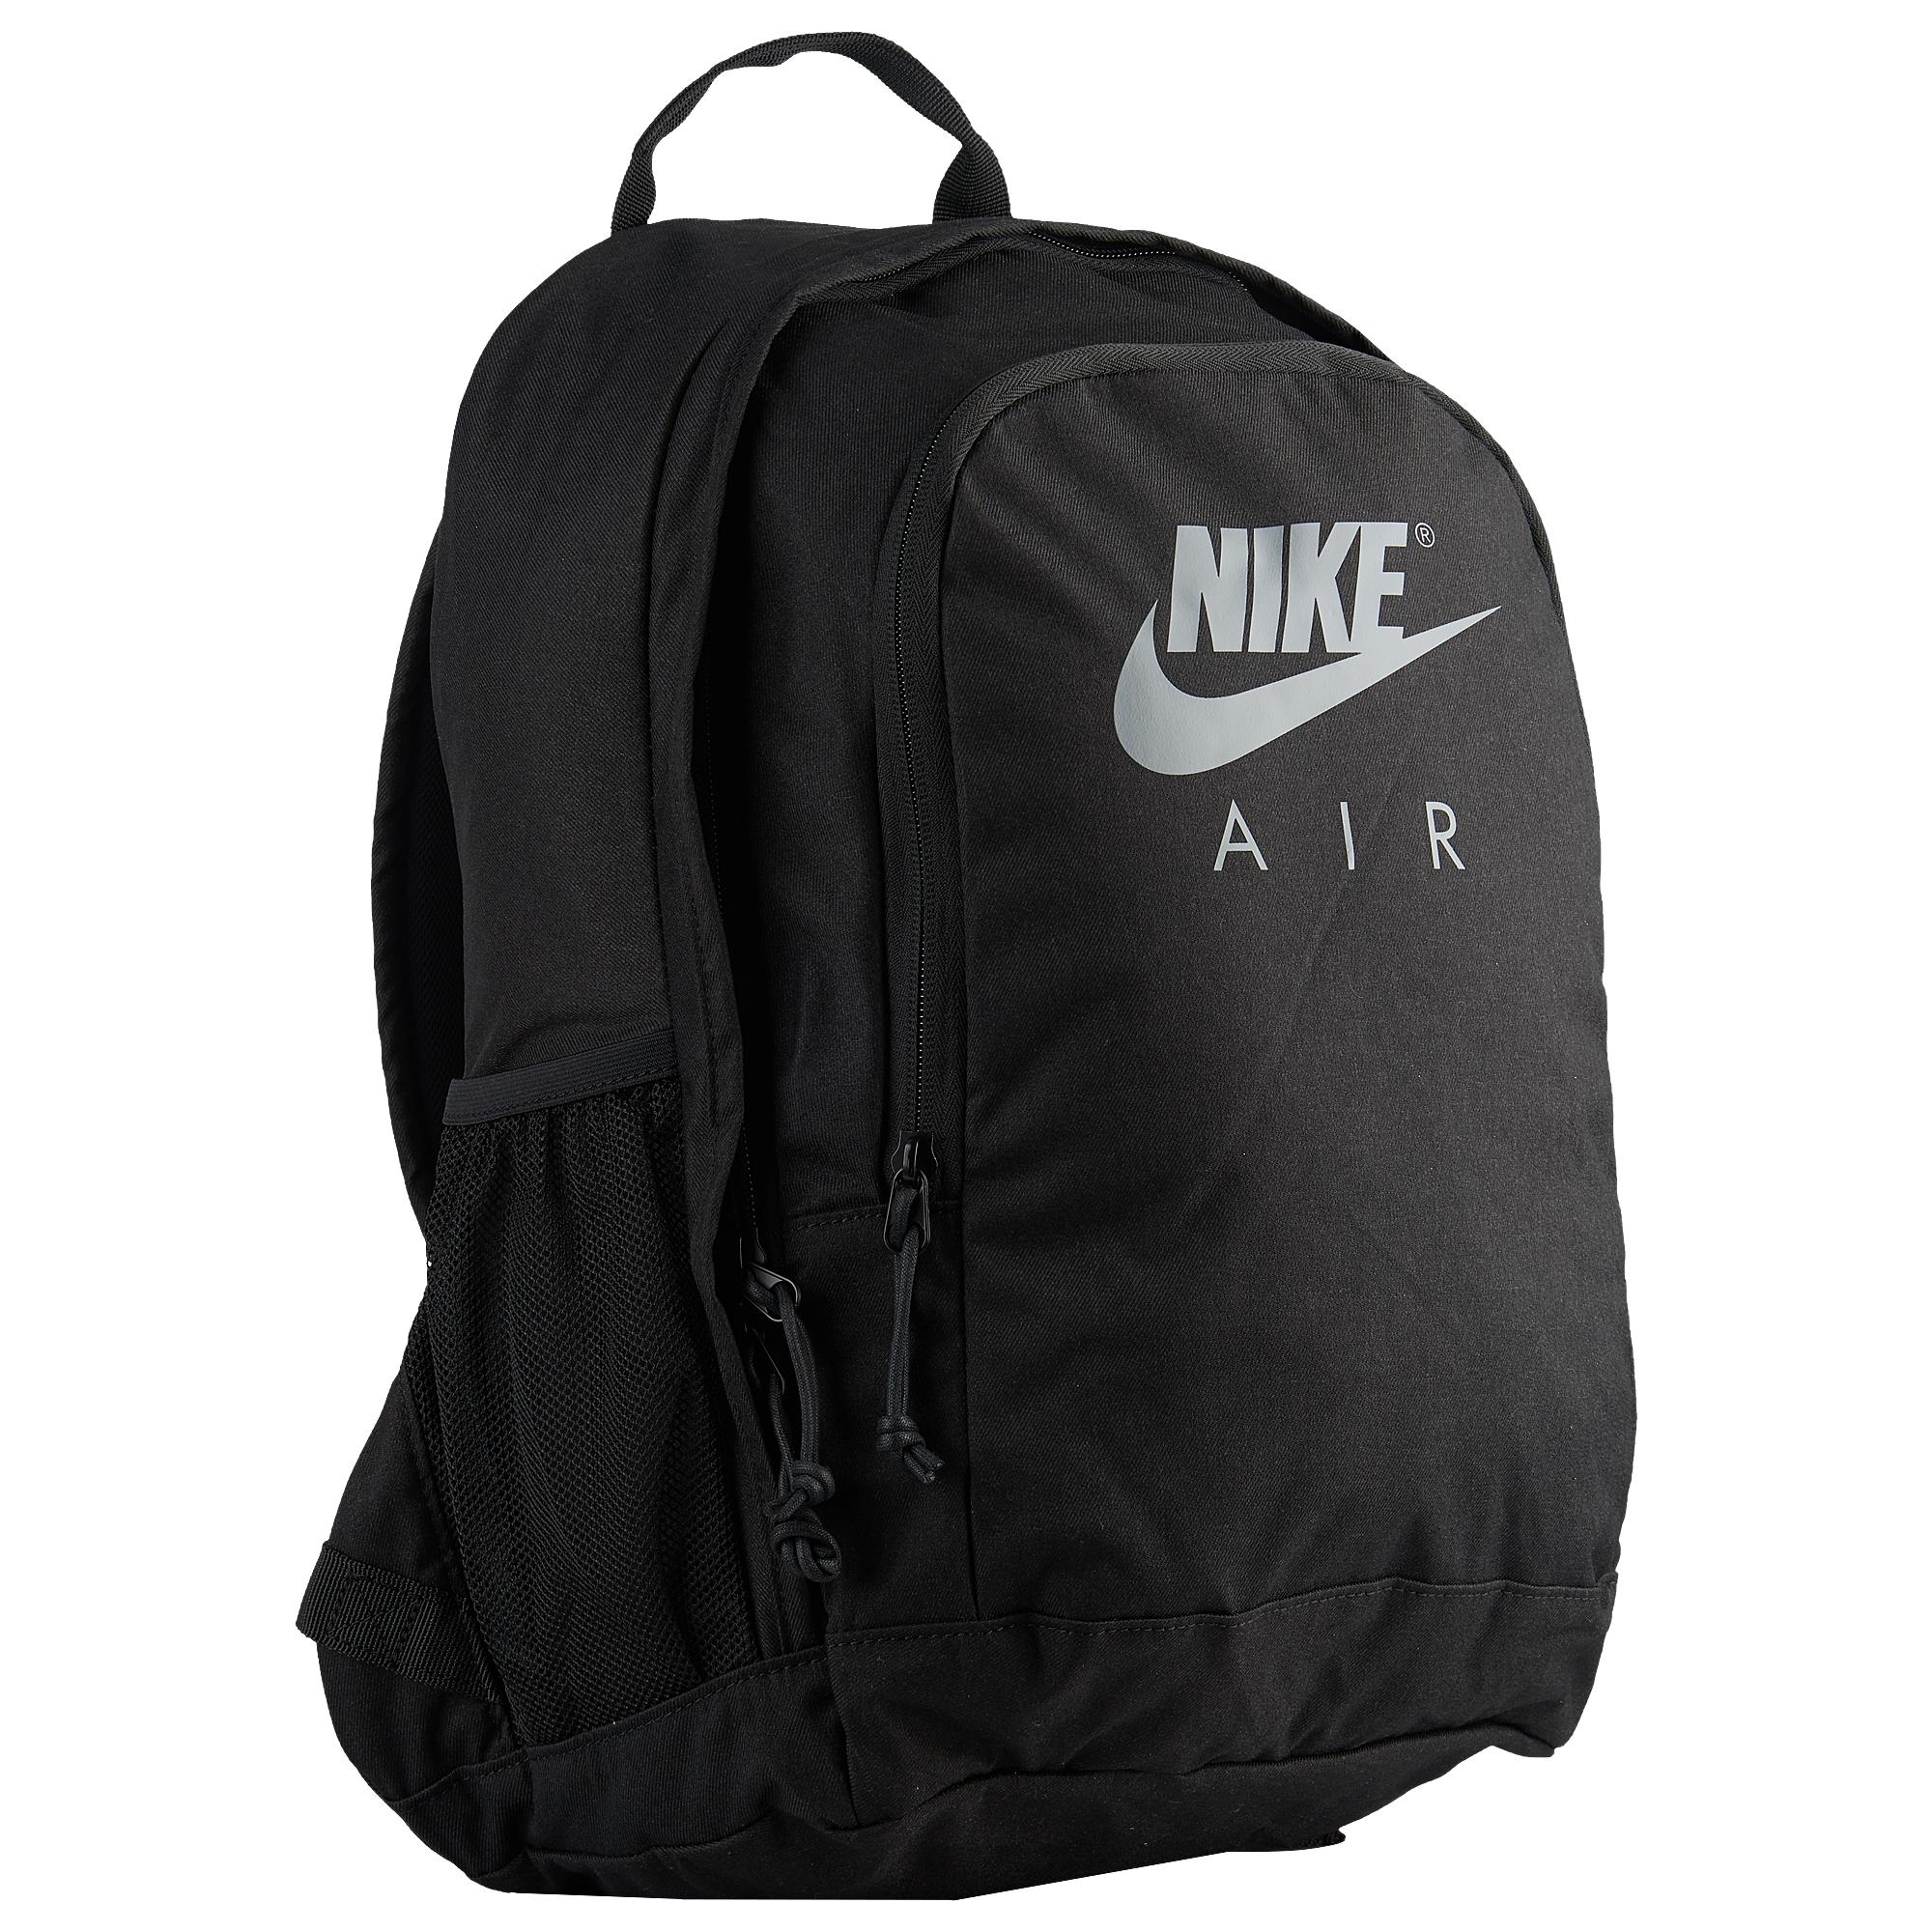 Nike Hayward Air Backpack in Black/Cool 